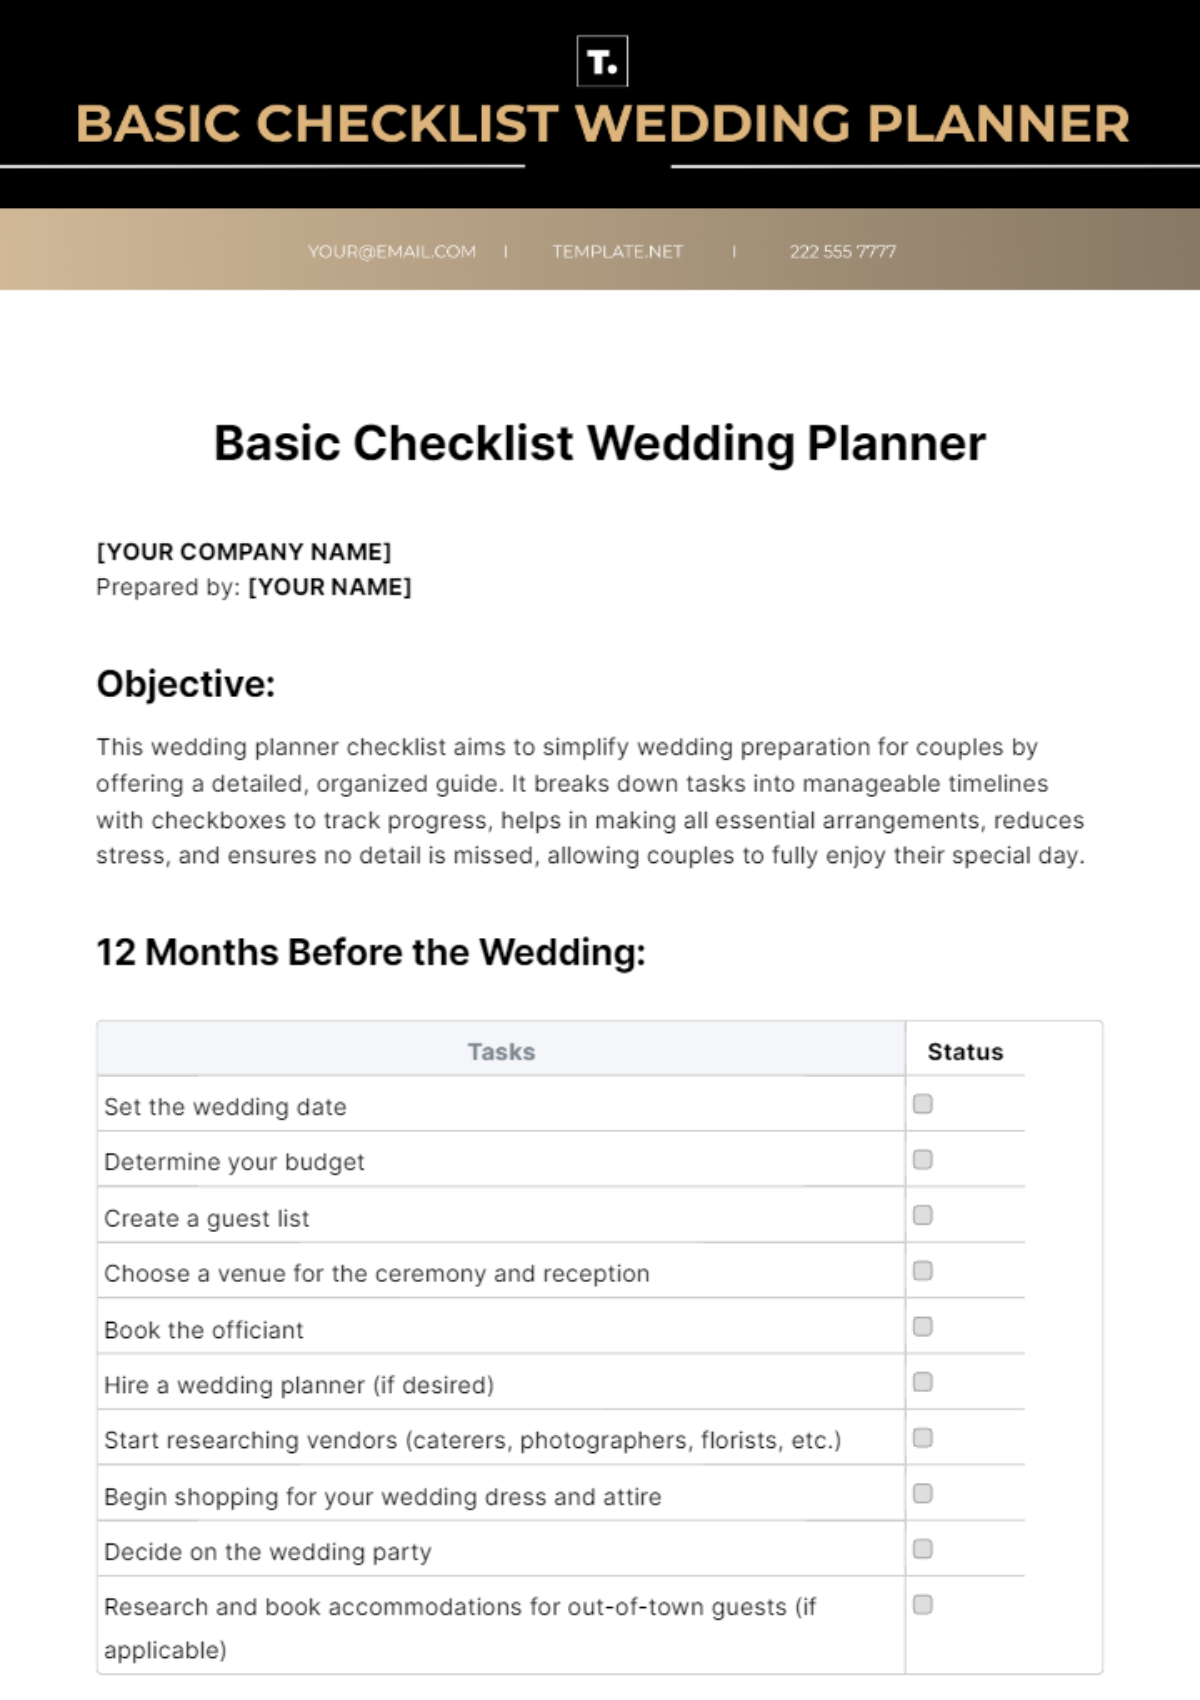 Basic Checklist Wedding Planner Template